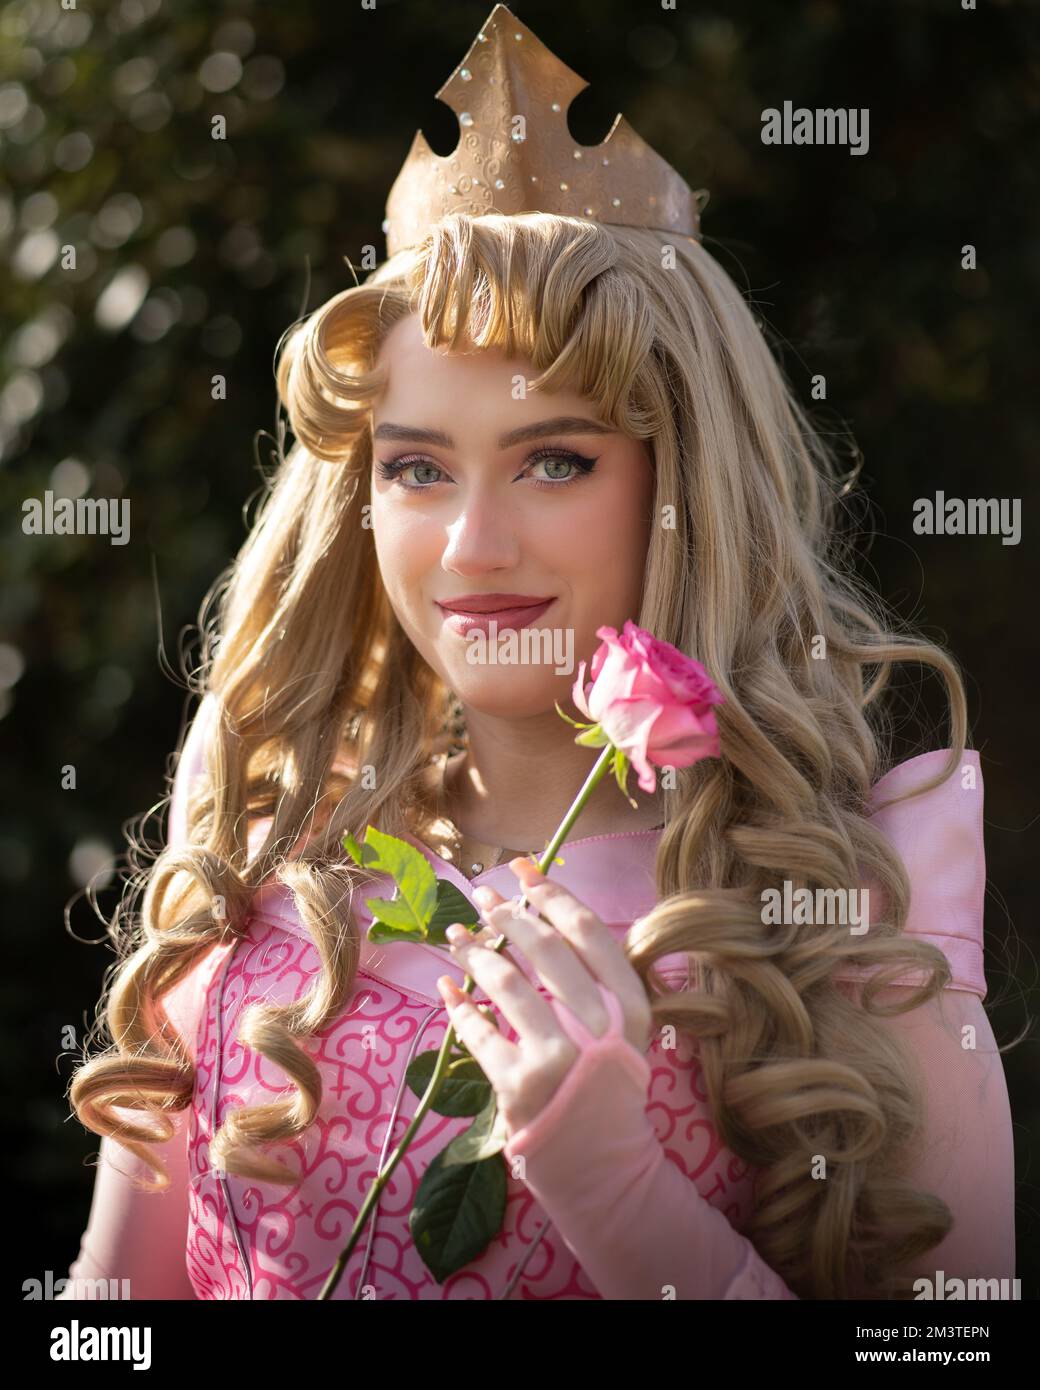 sleeping beauty cosplay Stock Photo - Alamy